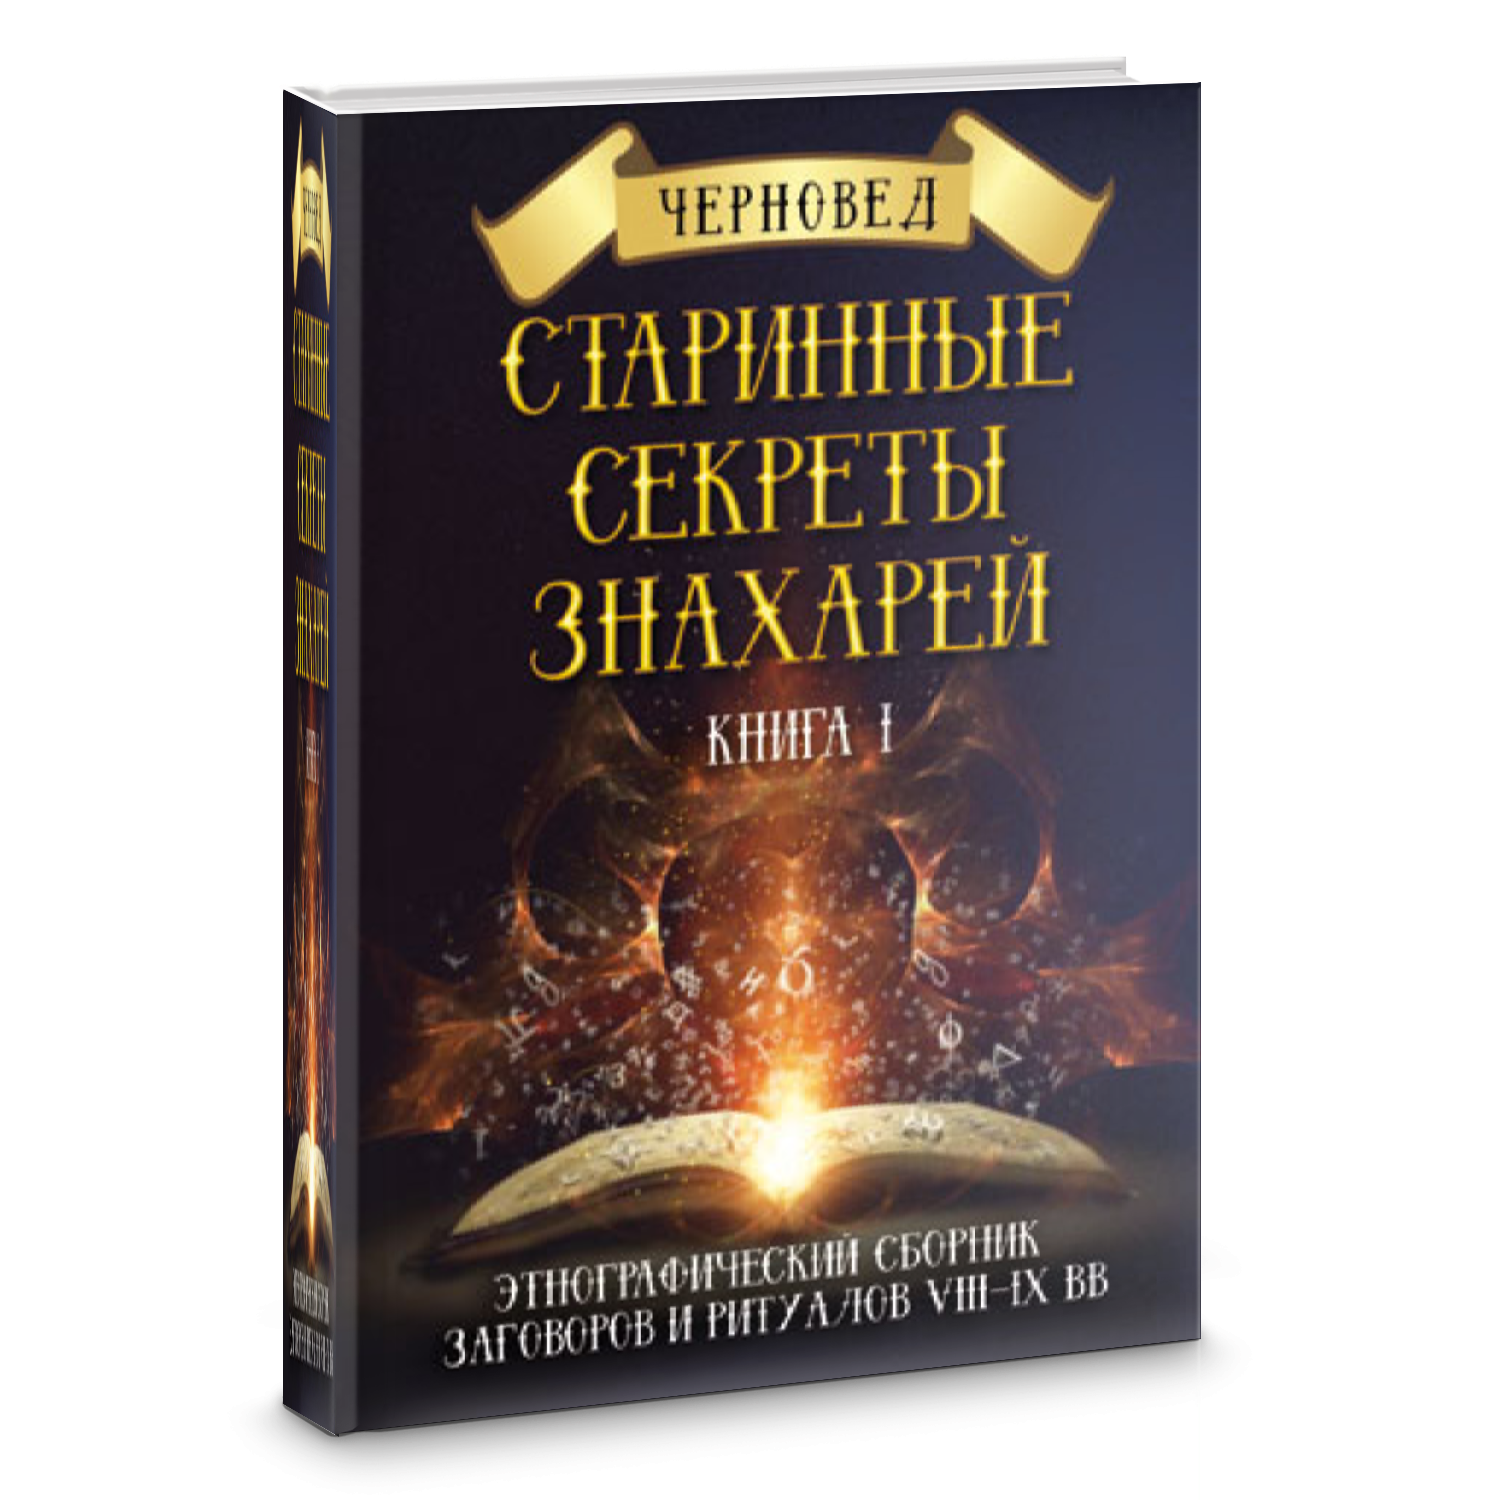 Читать книгу знахарь. Черновед старинные секреты знахарей. Черновед "черная магия". Черновед книги. Книга с обрядами и ритуалами.